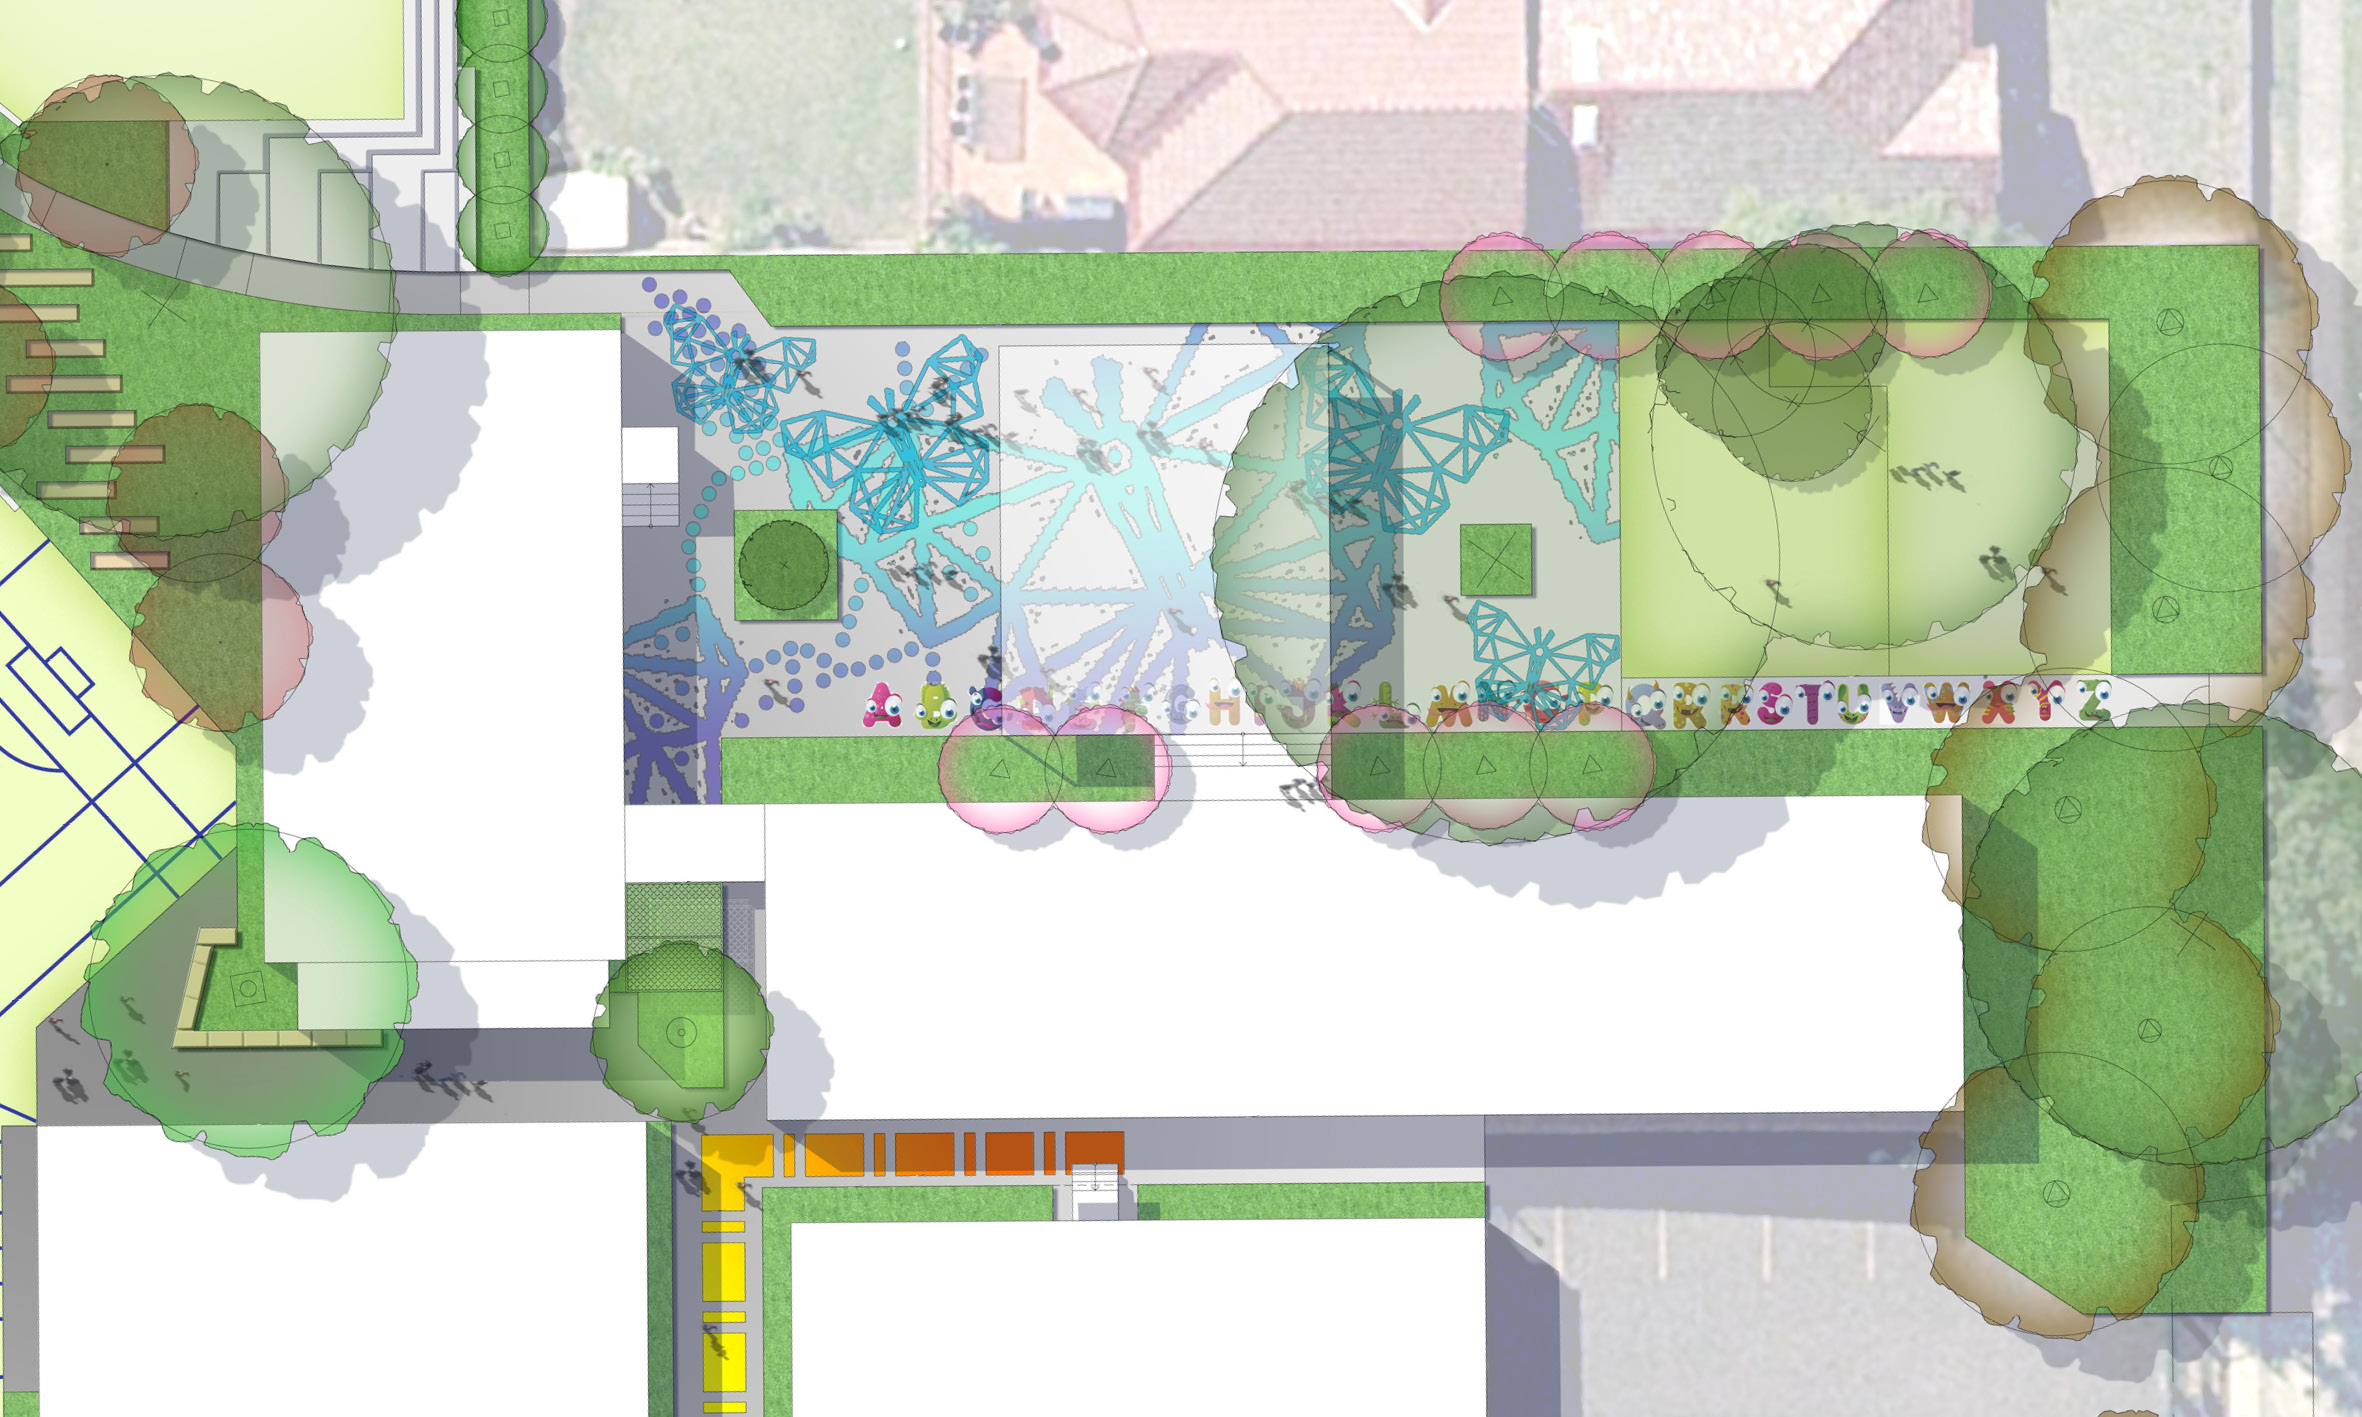 schoolyard landscape masterplan